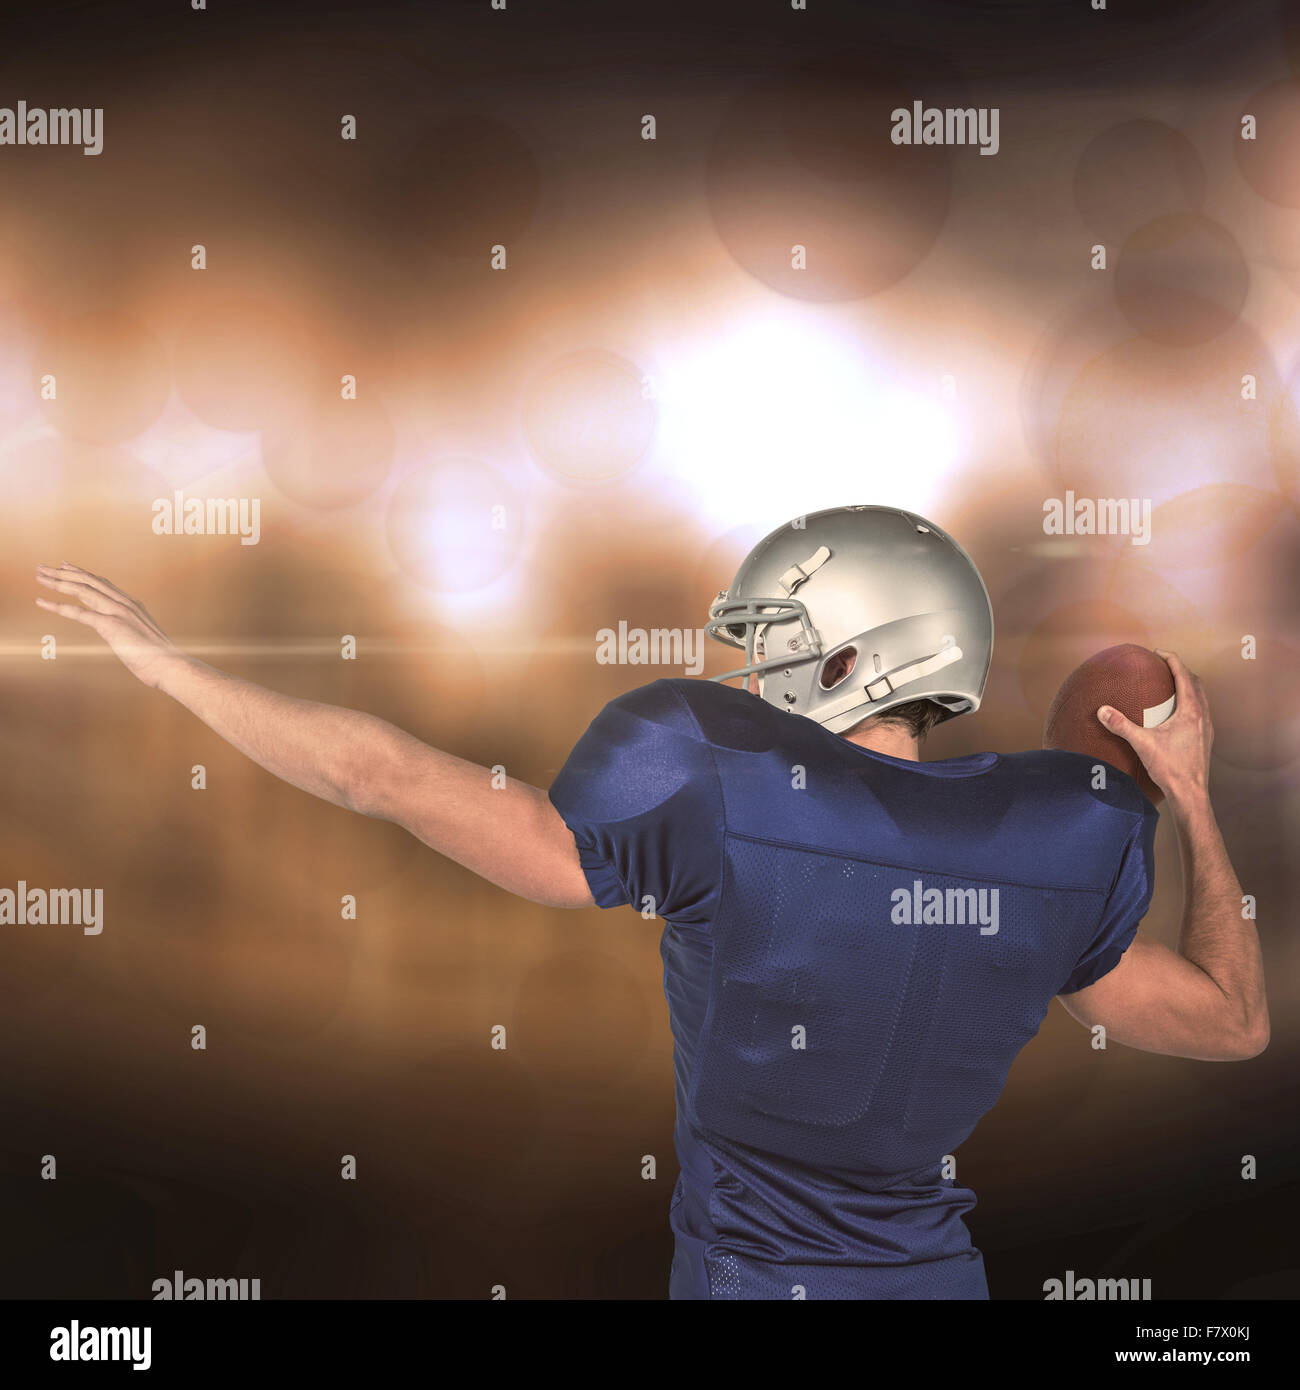 Immagine composita della vista posteriore del giocatore di football americano gettando la sfera Foto Stock